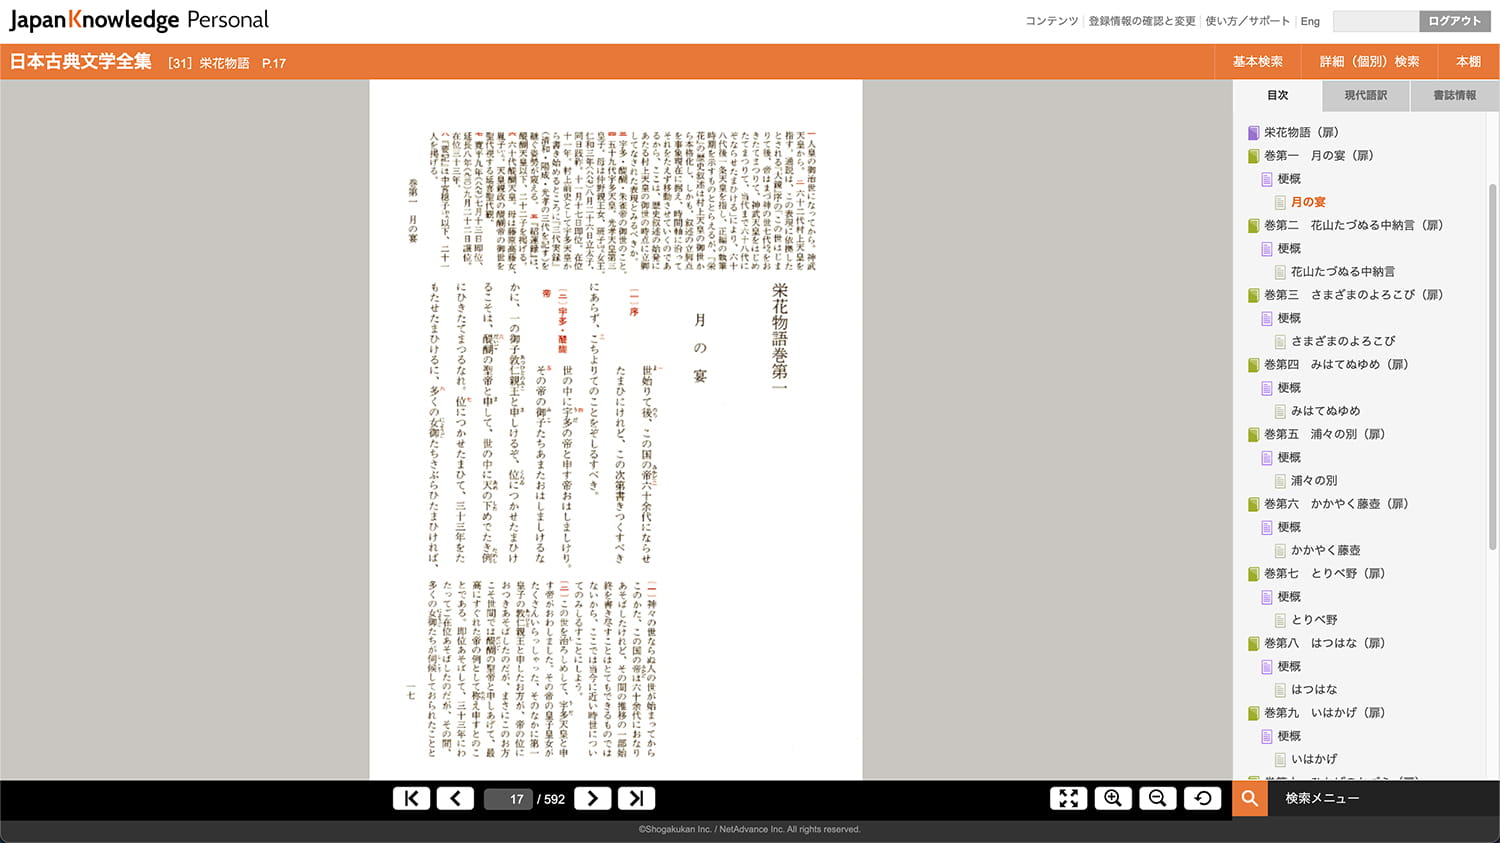 新編日本古典文学全集 31 32 33 栄花物語三冊セット『月報付き』